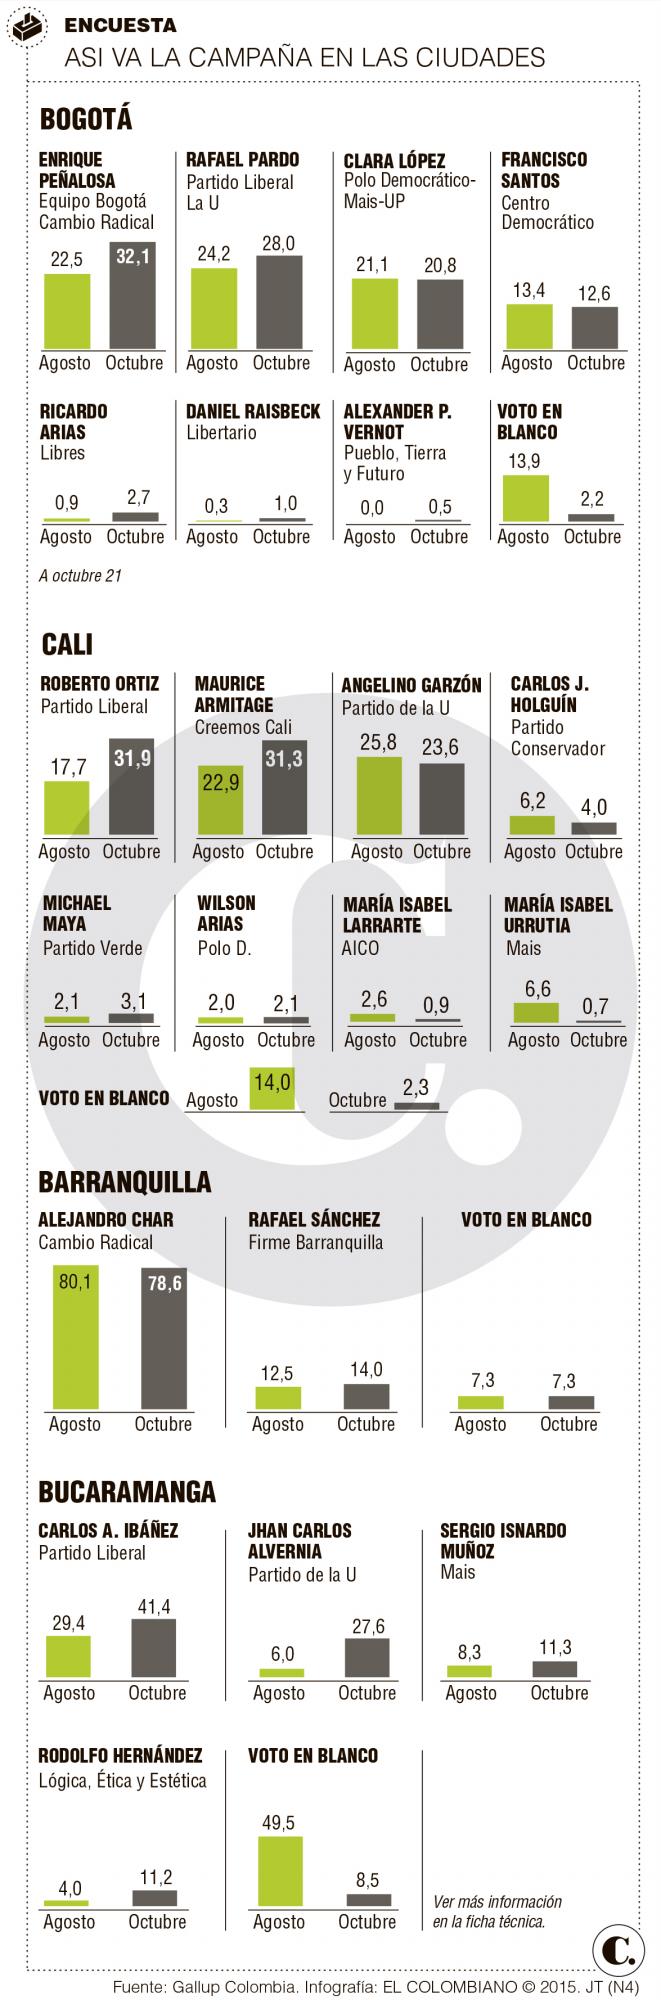 Bogotá, Cali y Bucaramanga, con las elecciones más reñidas